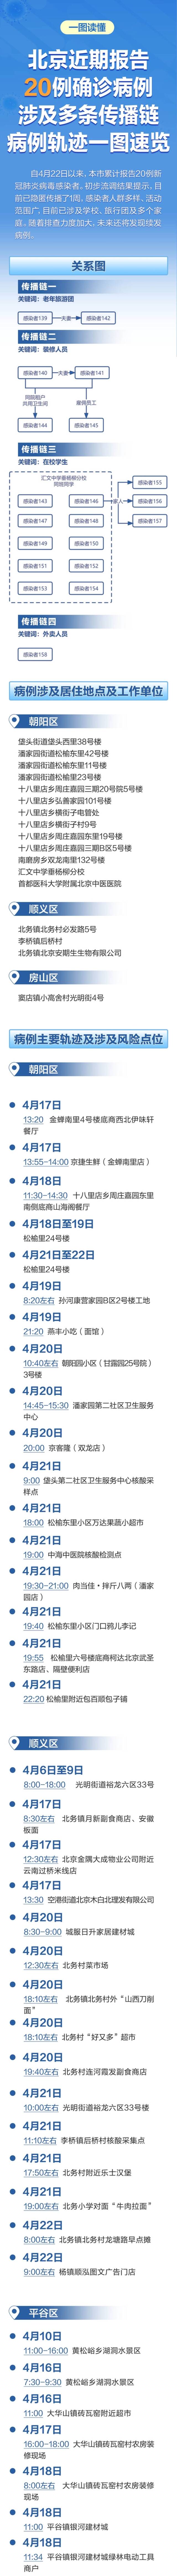 转发！北京近期报告20例确诊涉多条传播链，轨迹一图速览